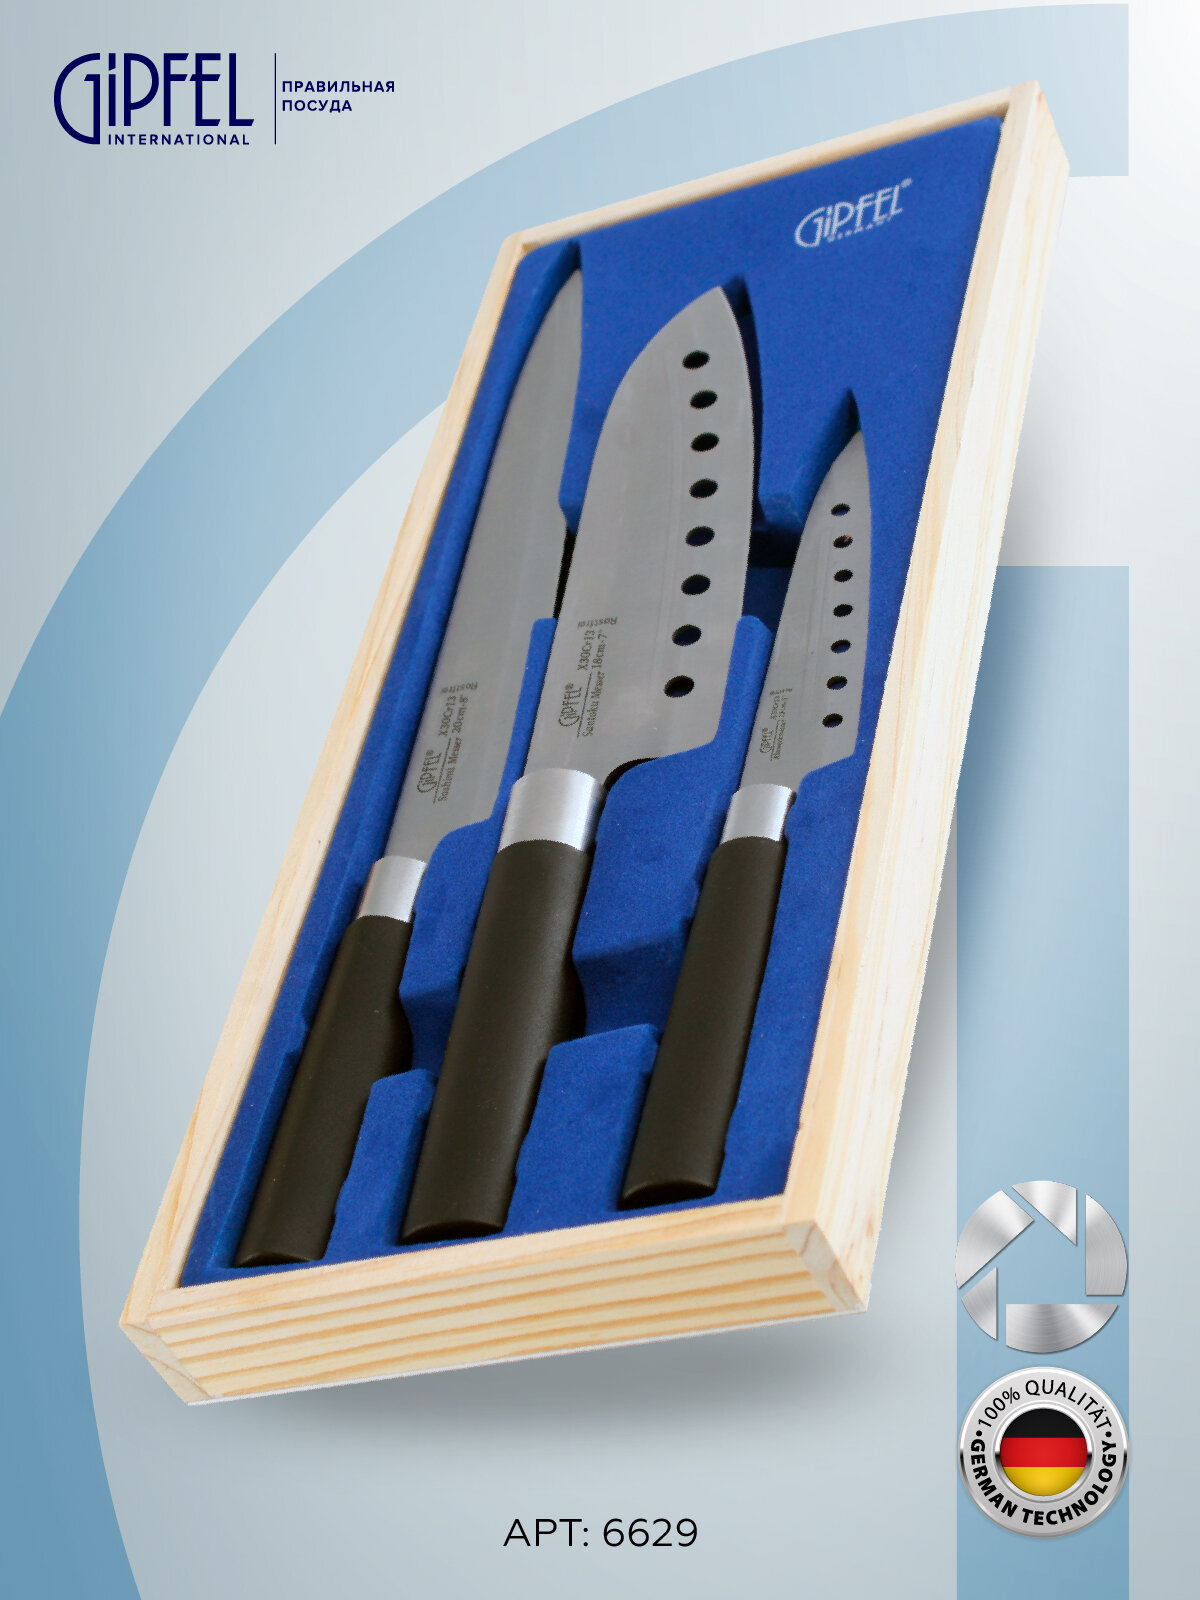 Набор ножей GIPFEL 6629 JAPANESE 3пр